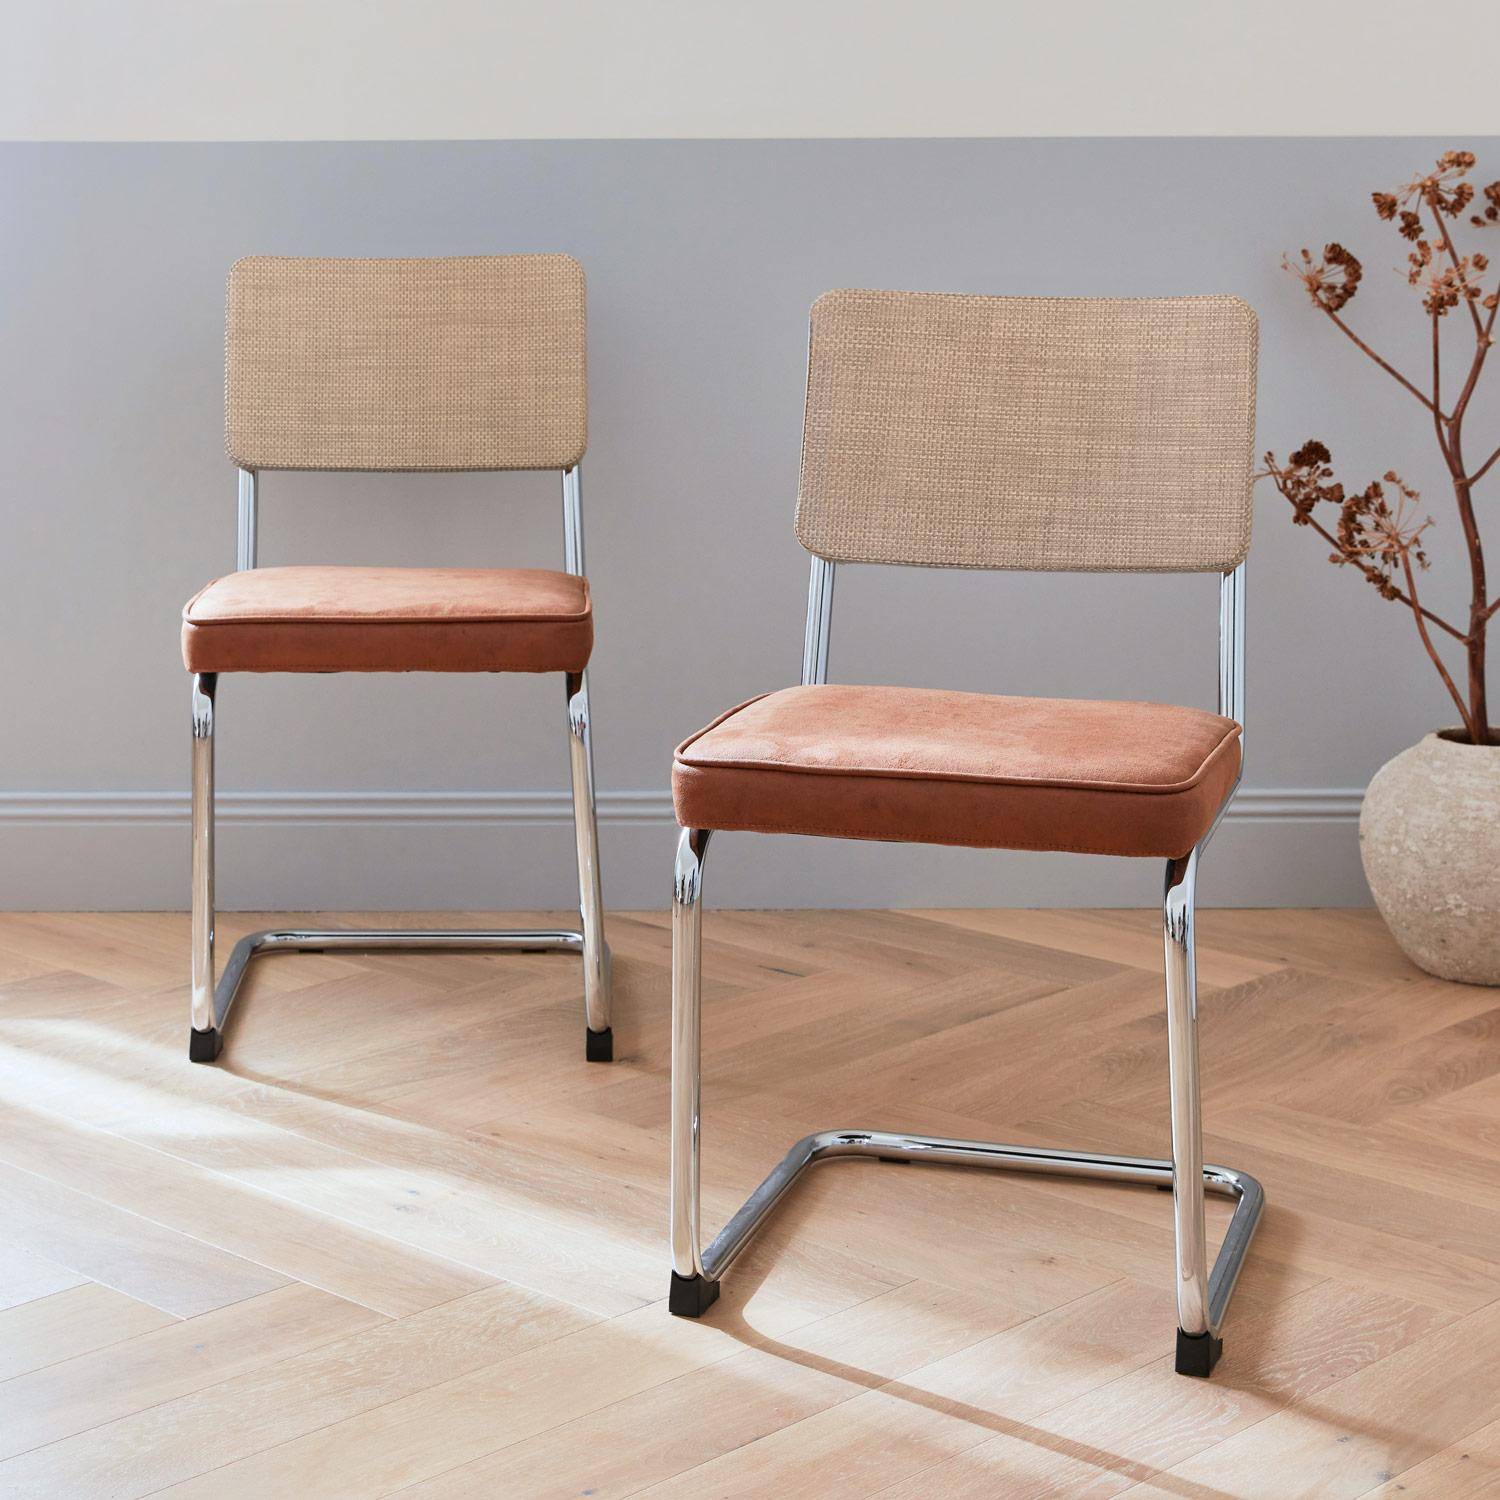 2 sillas cantilever - Maja - tela marrón claro y resina efecto ratán, 46 x 54,5 x 84,5cm   Photo2